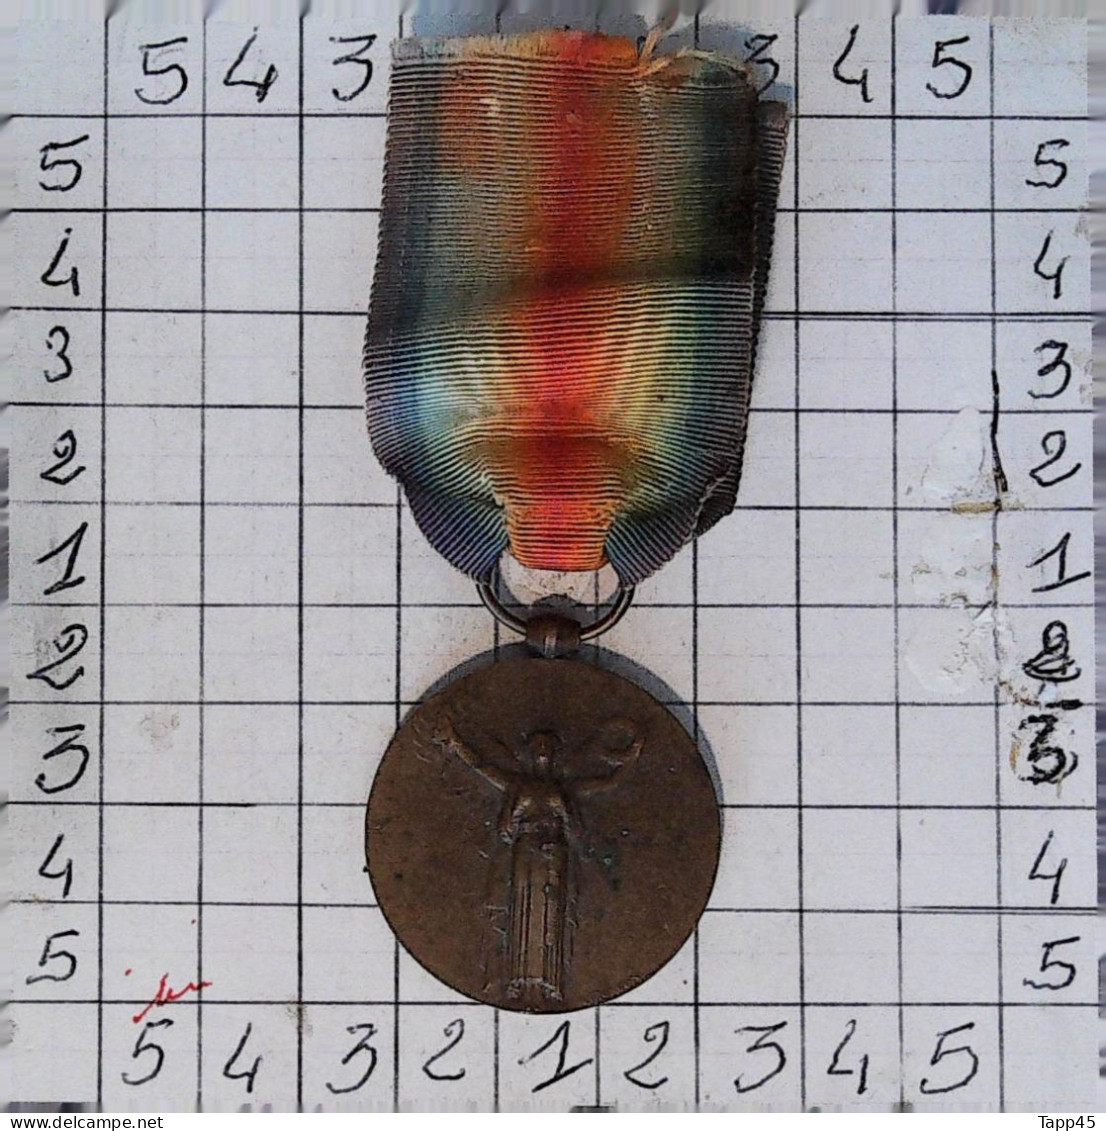 Médaille > Grande Guerre Pour La Civilisation 1914 1918 > Réf:Cl Belge  Pl 1/ 3 - Belgique